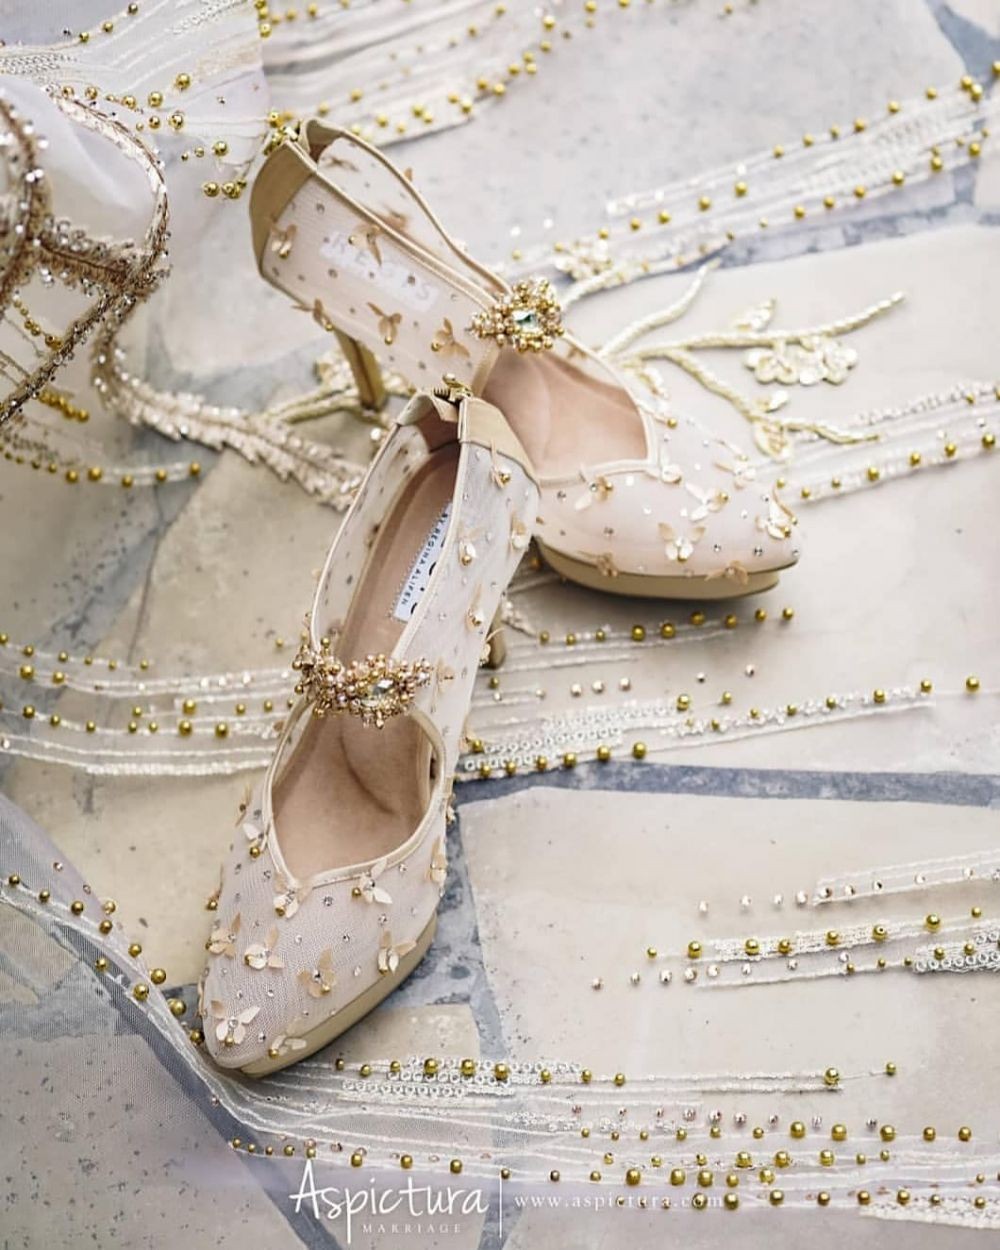 10 Sepatu Pernikahan  Artis Paling Memukau Bak Sepatu  Kaca 